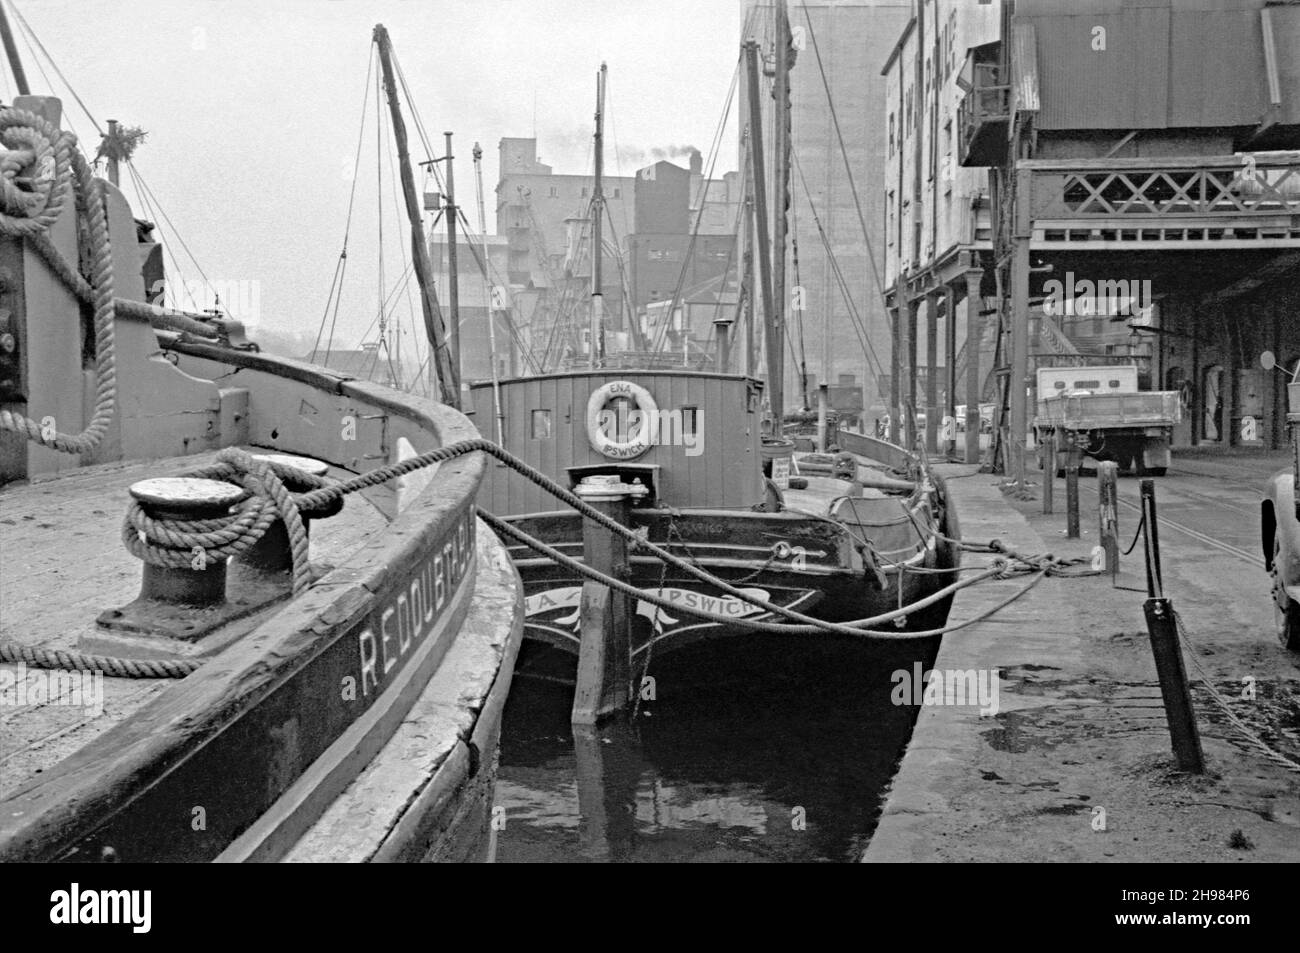 Le Wet Dock au port d'Ipswich, Suffolk, Angleterre, Royaume-Uni, a photographié dans ses derniers jours de trafic commercial au milieu des années 1960.Ici, des barges à voile sur la Tamise sont encore utilisées, principalement pour le commerce du grain, sur la rivière Orwell et la mer du Nord.Le centre est «Ena», une barge en bois construite dans la cour de W B McLearon à Harwich, Essex, en 1906.Elle est un remarquable « petit navire » de Dunkerque de la Seconde Guerre mondiale réputé avoir sauvé 100 hommes en 1940.Une importante régénération de la région a eu lieu depuis les années 1990 et l’activité commerciale du port est maintenant située plus en aval – une photographie vintage des années 1960. Banque D'Images